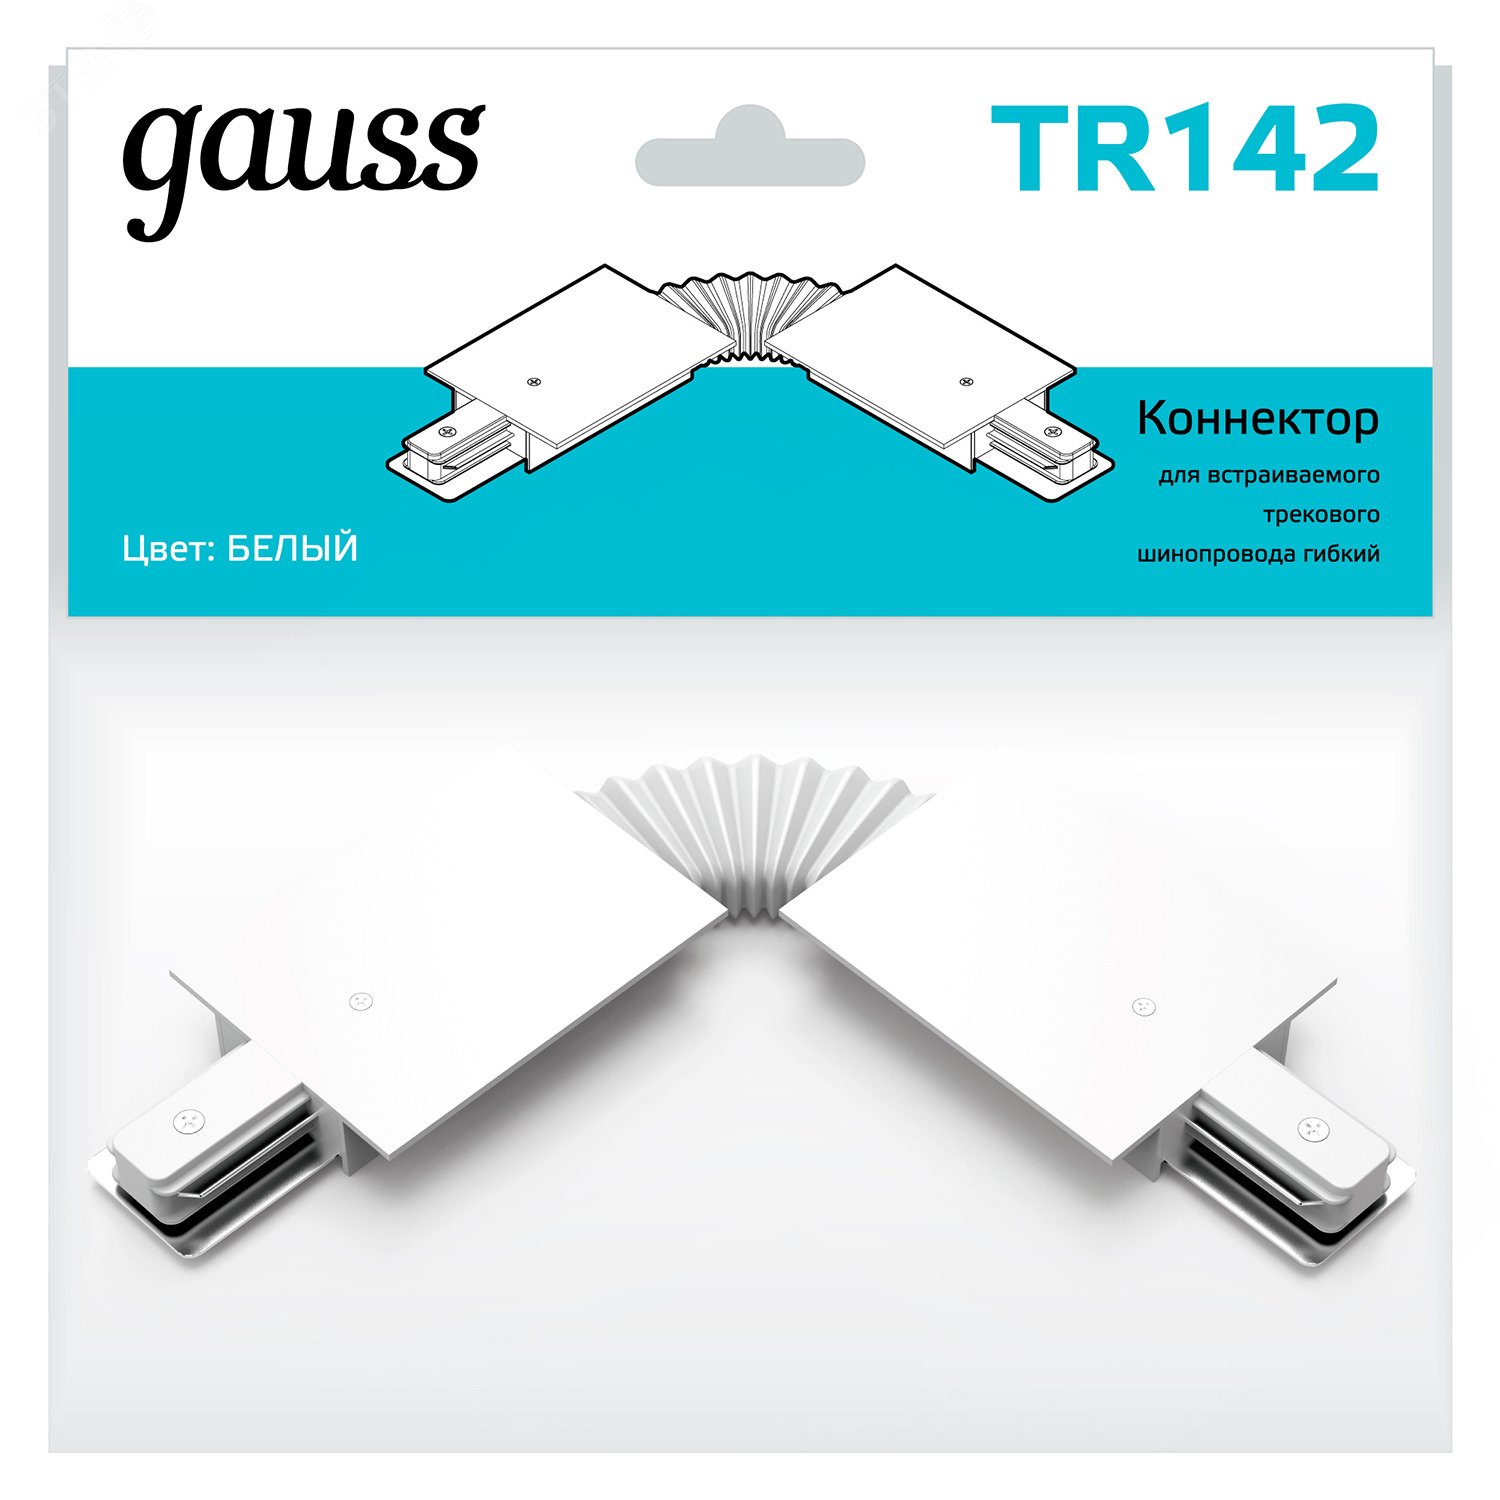 Коннектор для встраиваемых трековых шинопроводов гибкий (I) белый однофазный TR142 GAUSS - превью 3